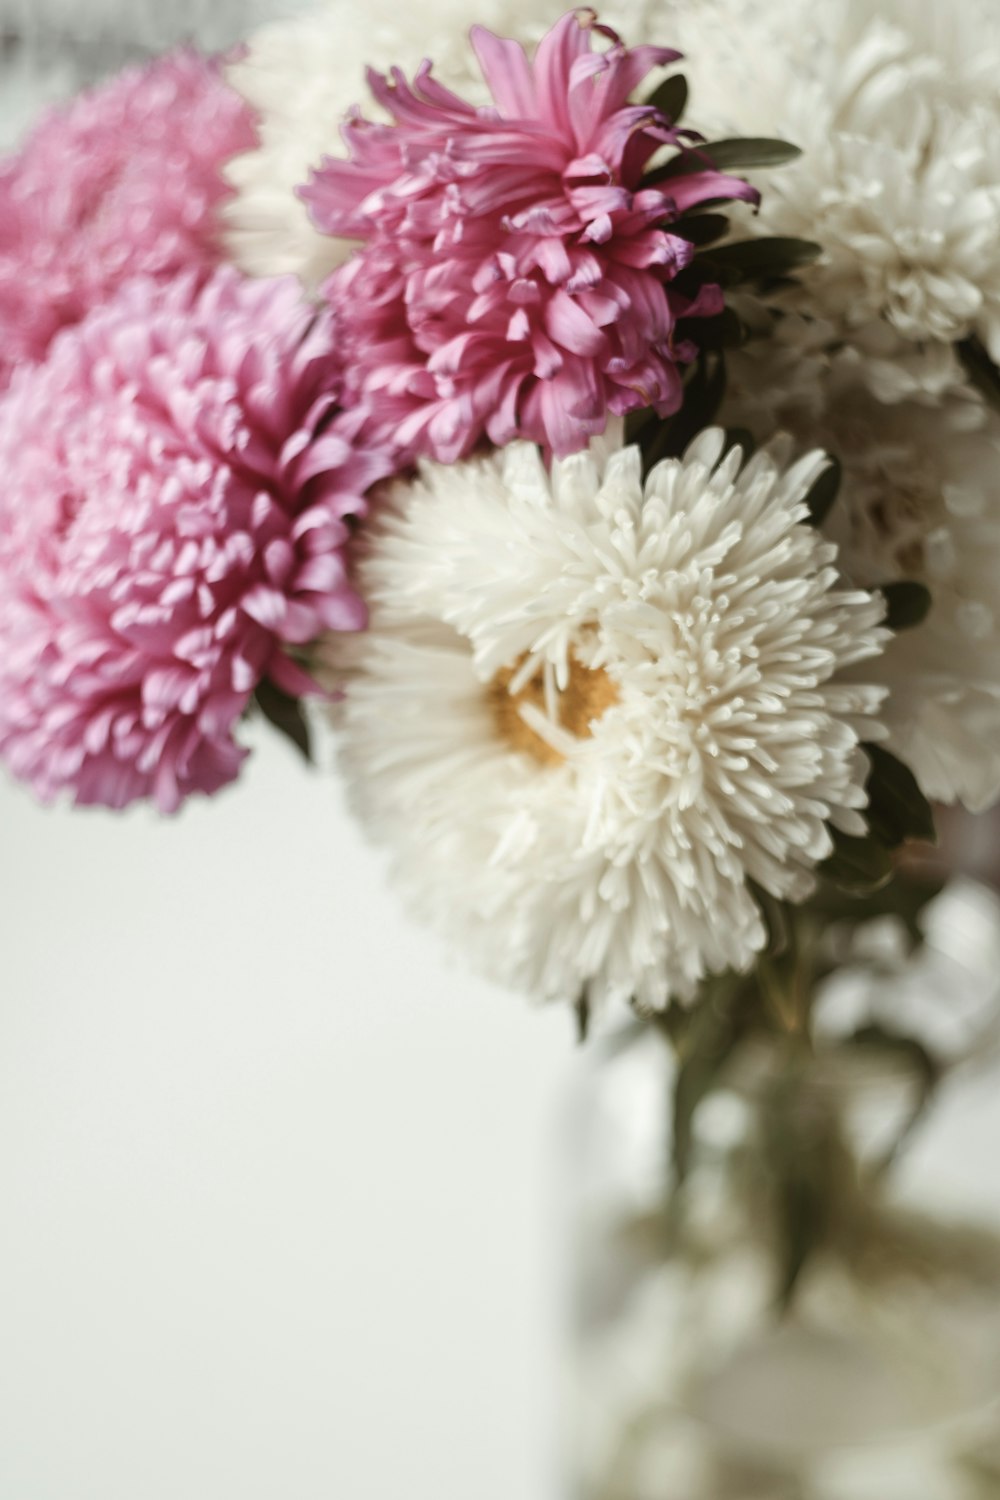 흰색과 분홍색 꽃잎이 있는 꽃 중앙 장식품의 선택적 초점 사진